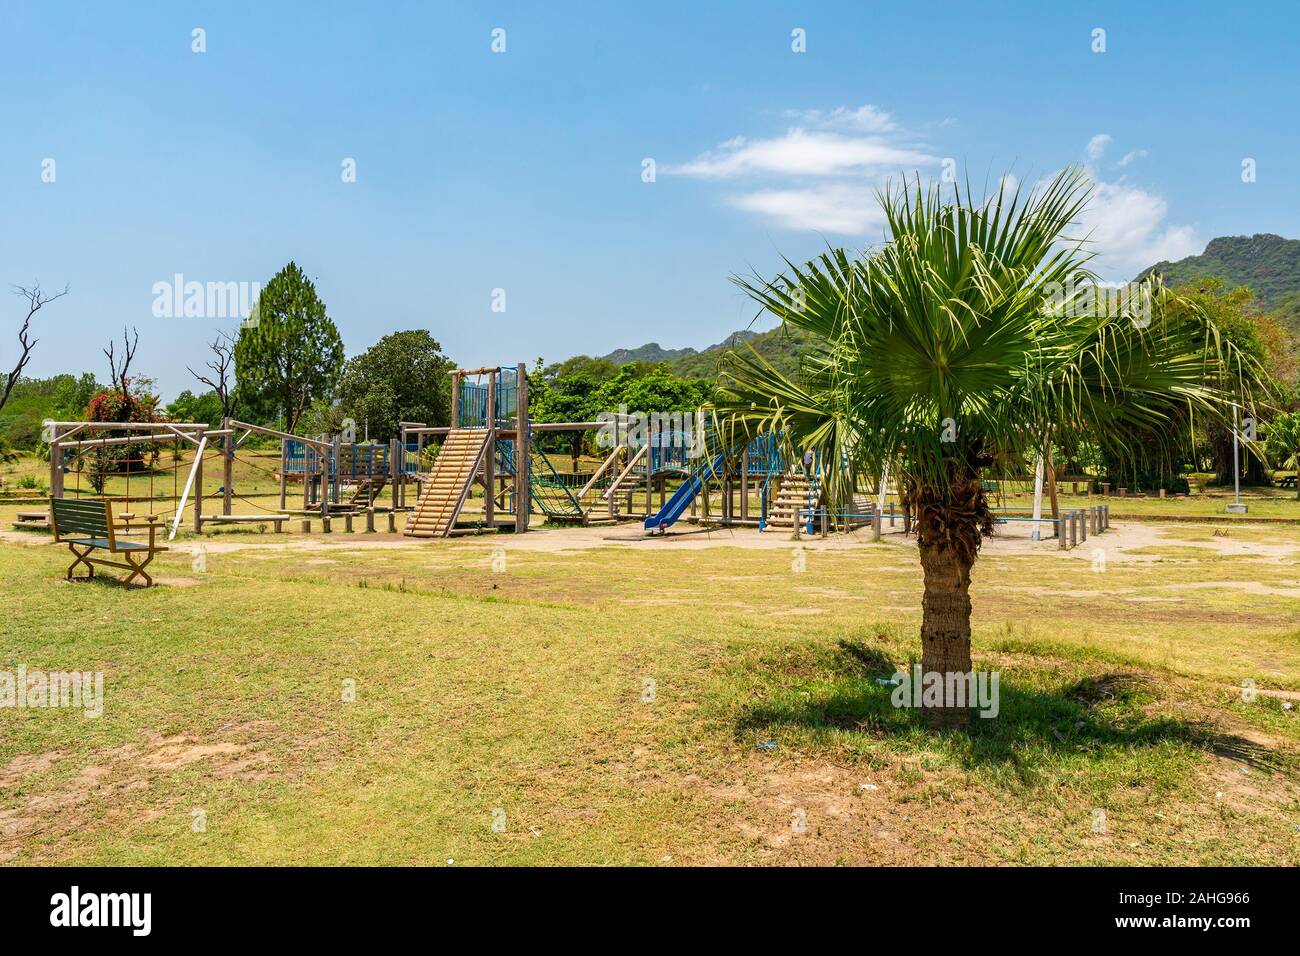 Islamabad bambini giapponesi parco pittoresco panorama mozzafiato del parco giochi su un soleggiato Blue Sky giorno Foto Stock